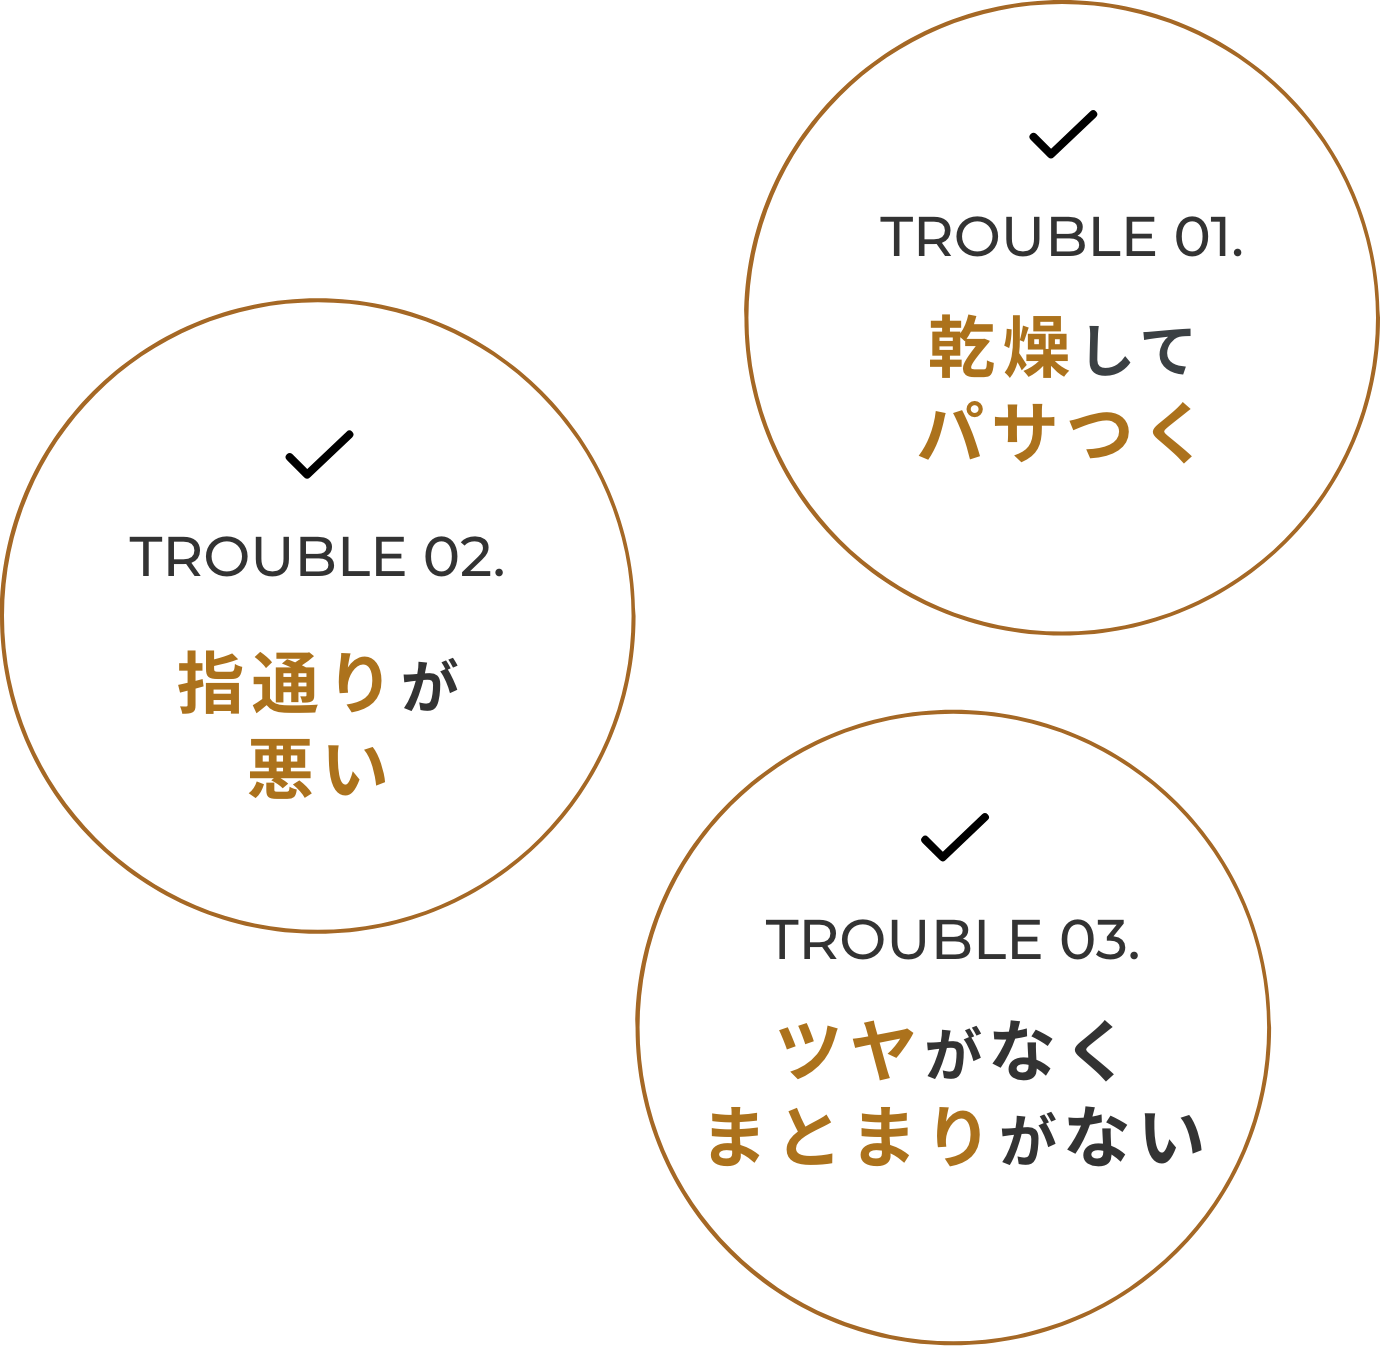 TROUBLE 01. 乾燥してパサつく TROUBLE 02. 指通りが悪い TROUBLE 03. ツヤがなく まとまりがない